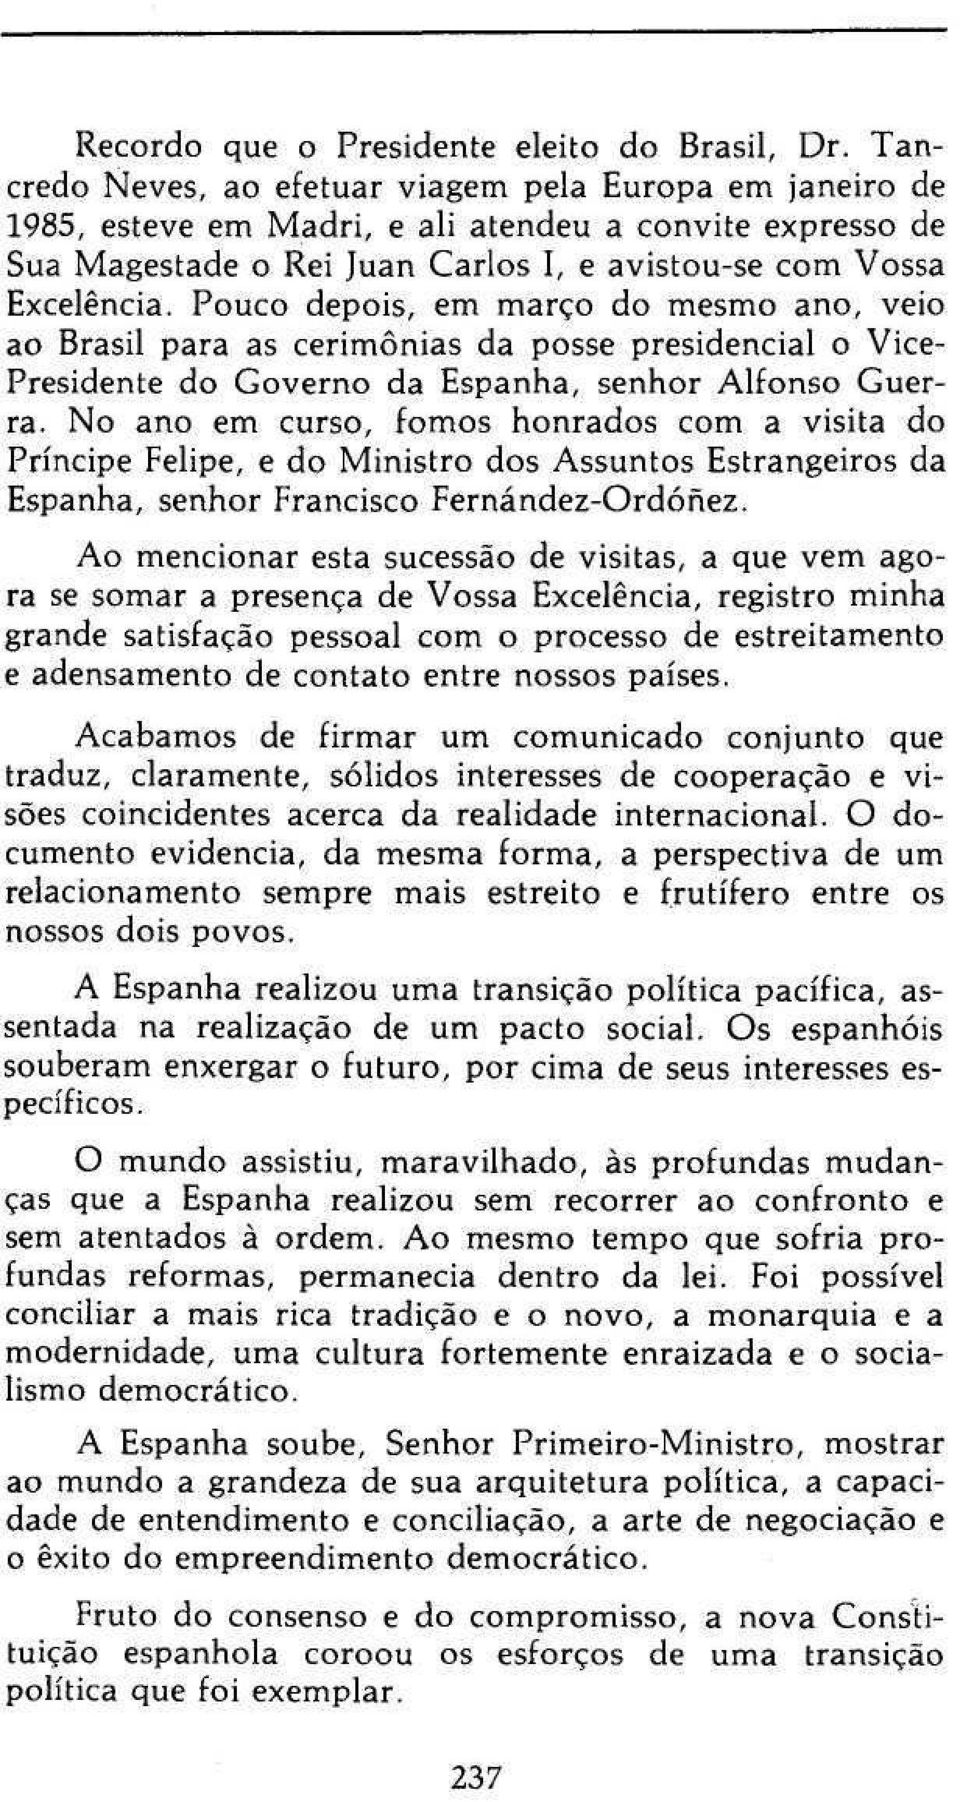 Pouco depois, em março do mesmo ano, veio ao Brasil para as cerimônias da posse presidencial o Vice- Presidente do Governo da Espanha, senhor Alfonso Guerra.